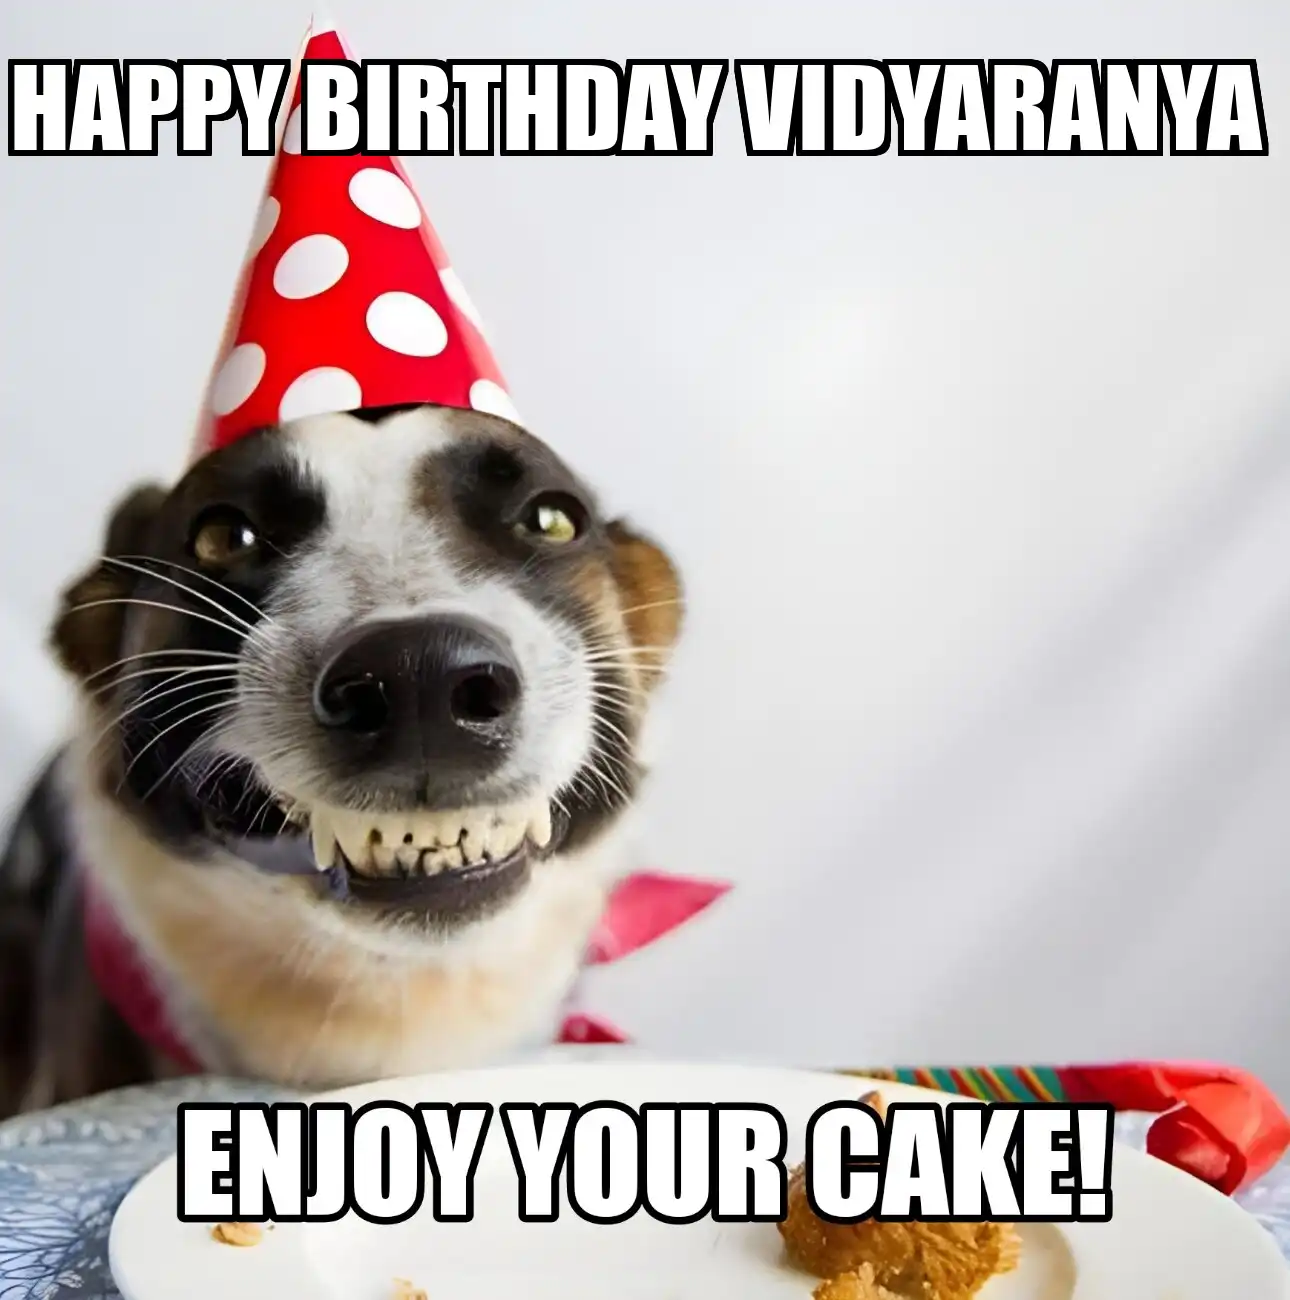 Happy Birthday Vidyaranya Enjoy Your Cake Dog Meme